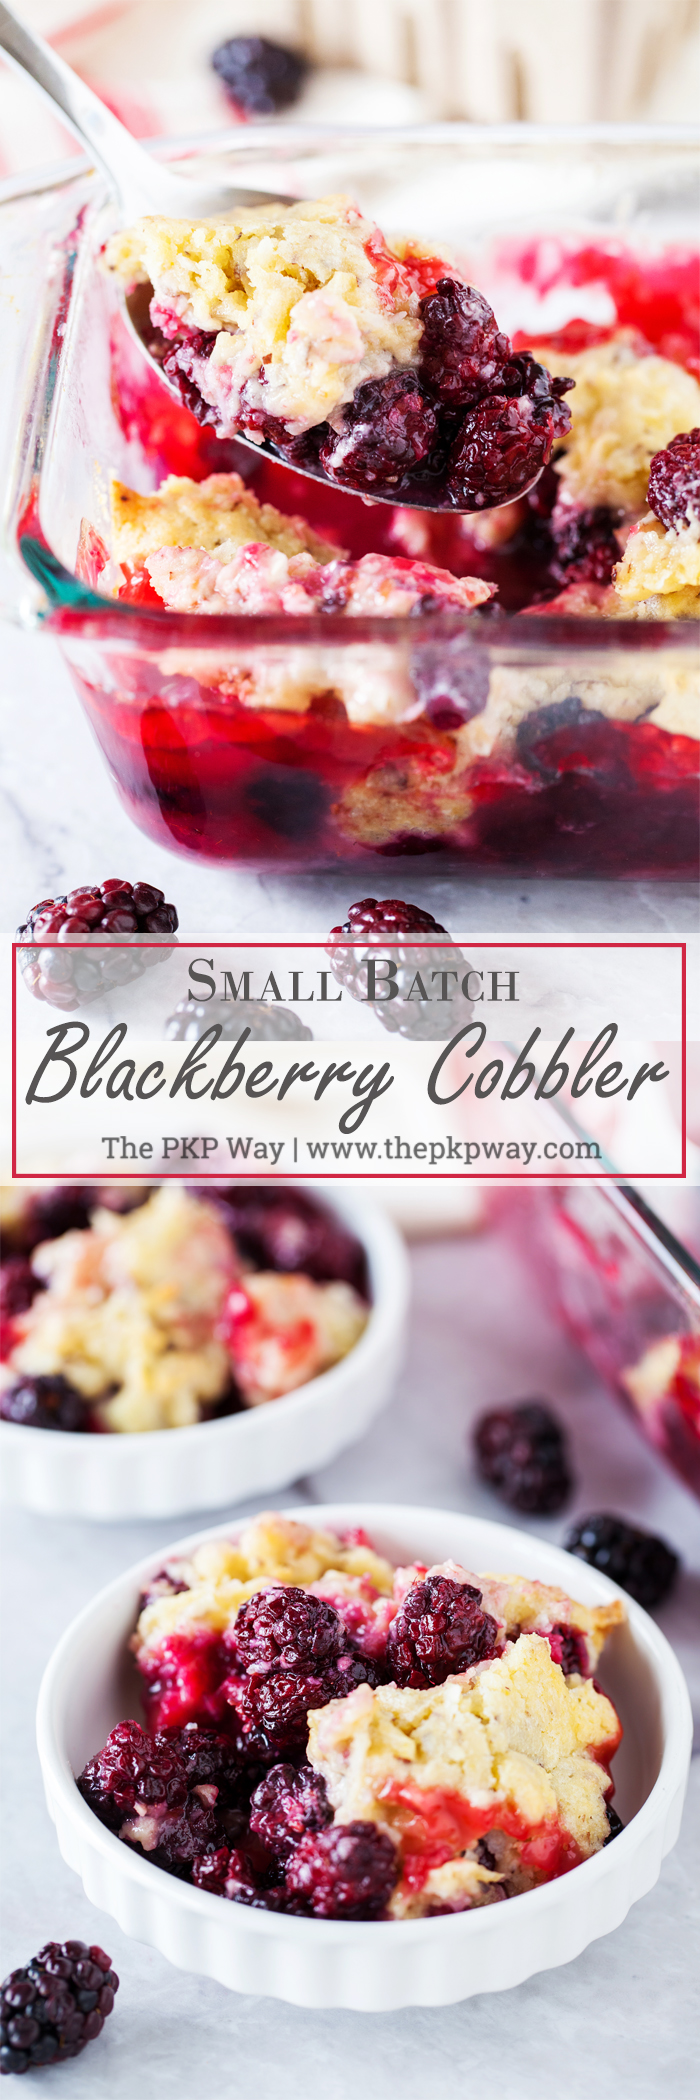 en tårta och saftig blackberry fyllning toppad med en hemlig ingrediens topping gör denna lilla Batch Blackberry skomakare den perfekta söta behandla på din nästa intima sammankomst.